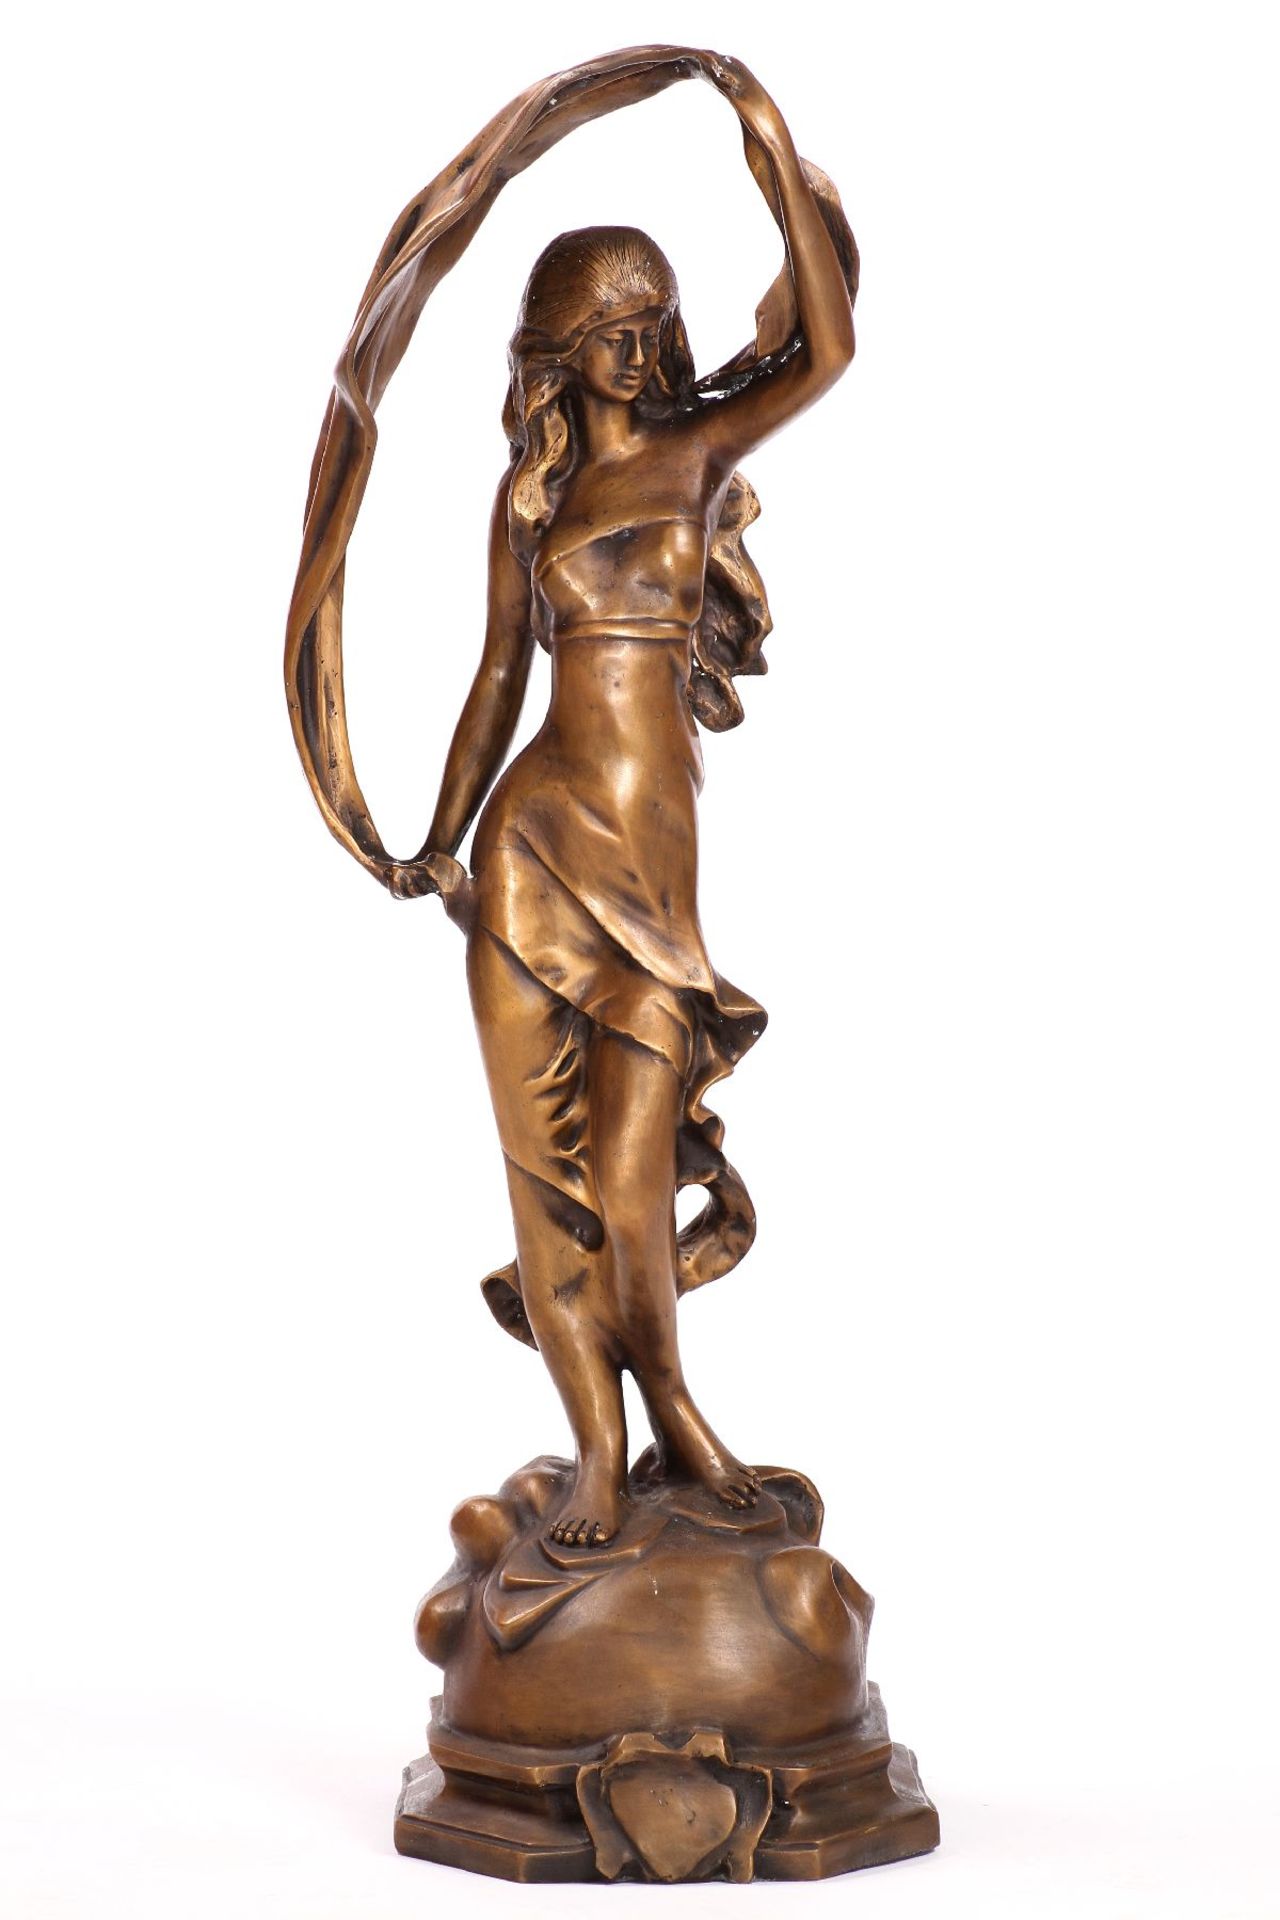 Tänzerin mit Tuch, Bronze, goldbraun patiniert, Faltenwurf des Kleides durch die Bewegungen des